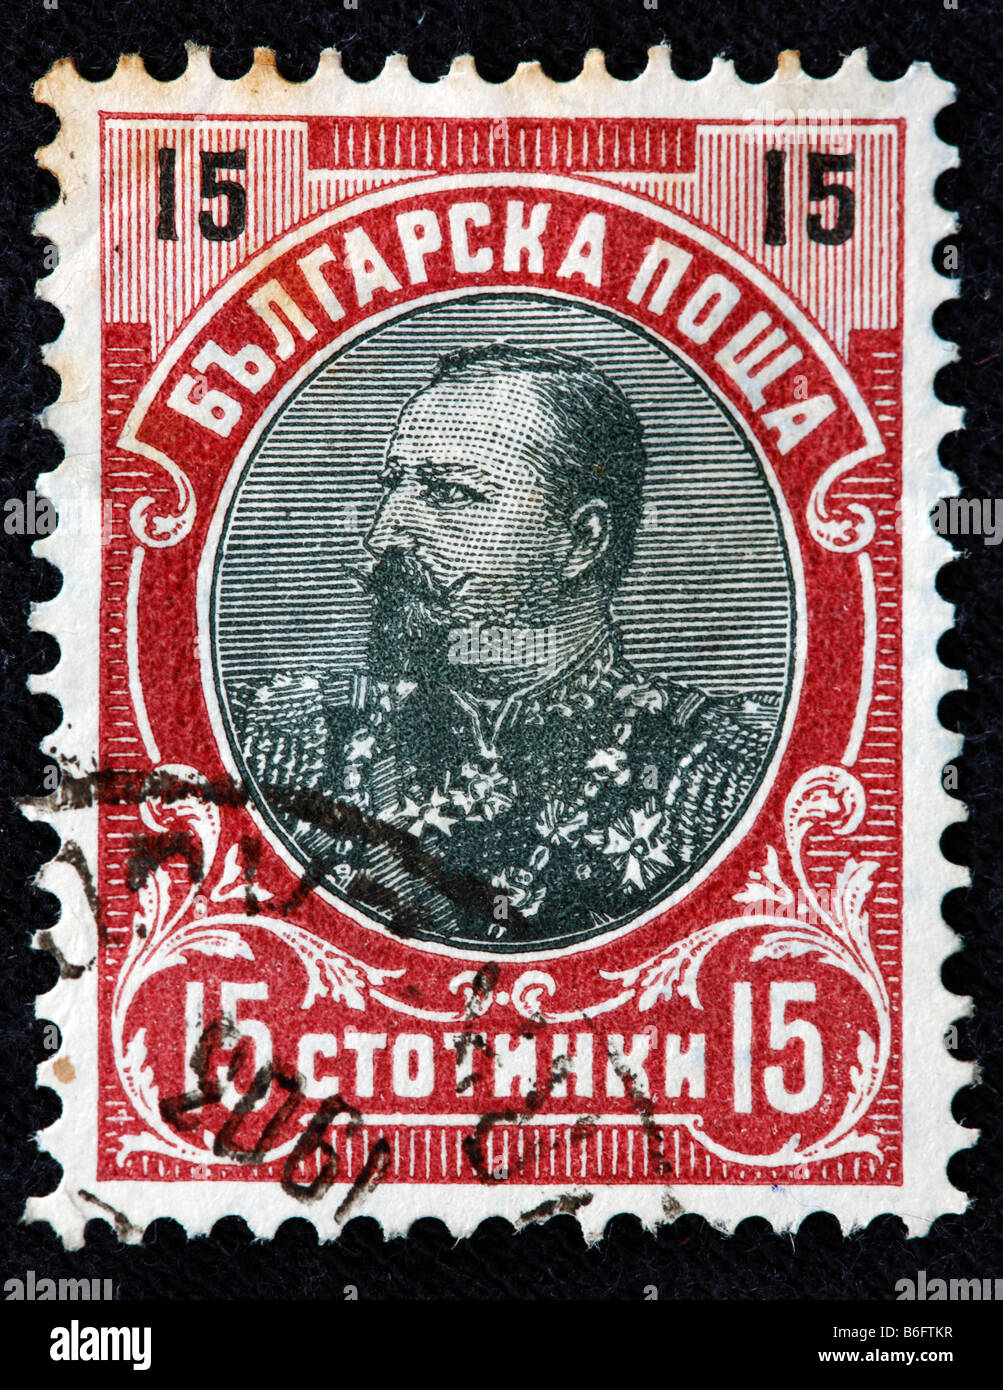 Ferdinand I, Tsar of Bulgaria (1887-1918), postage stamp, Bulgaria Stock Photo